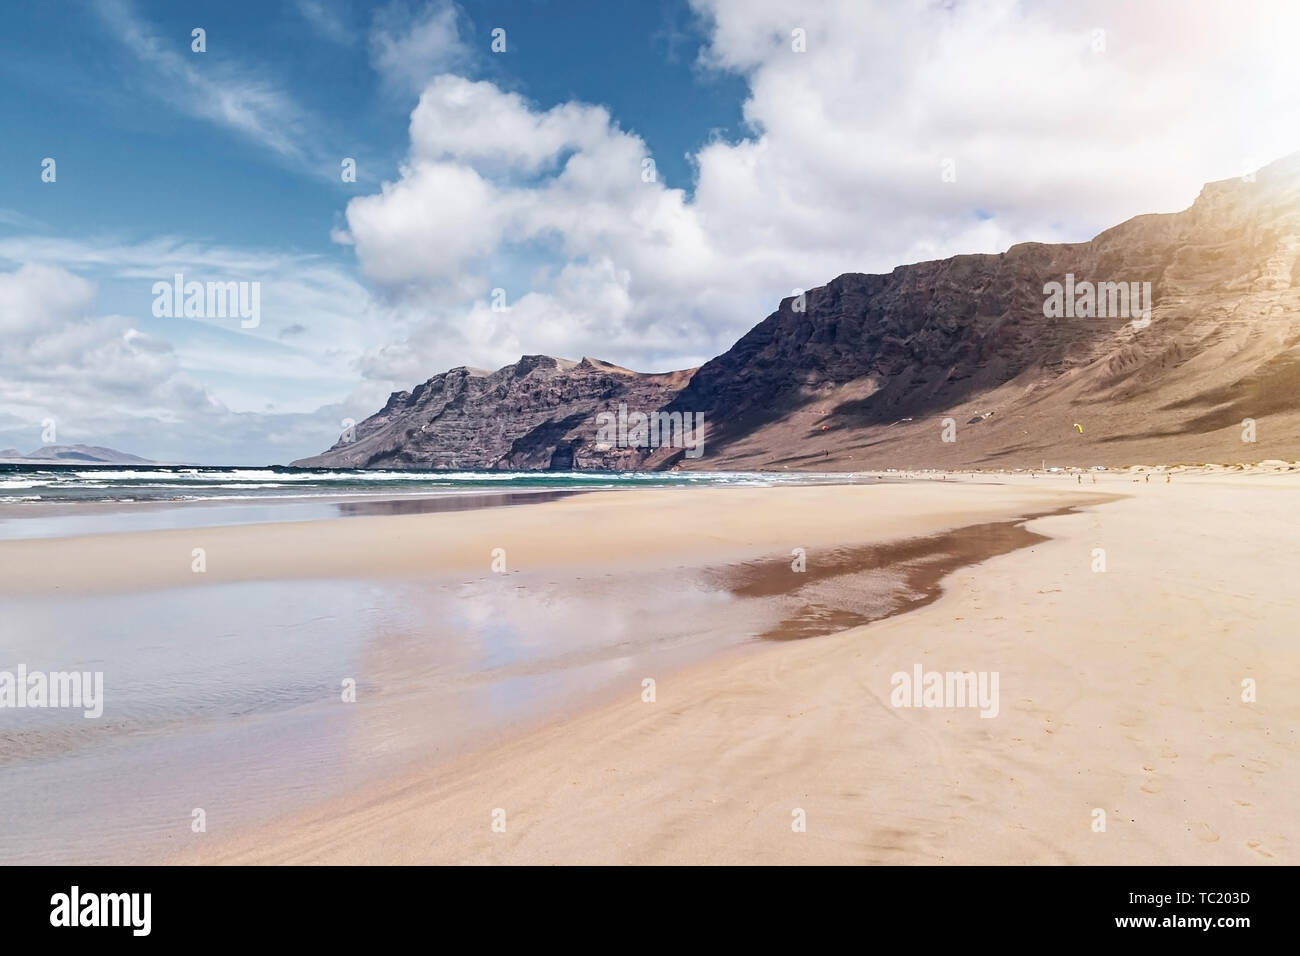 Ampia di sabbia spiaggia di Famara a Lanzarote, Spagna contro oceano Atlantico, montagne scoscese e bellissimo cielo Foto Stock